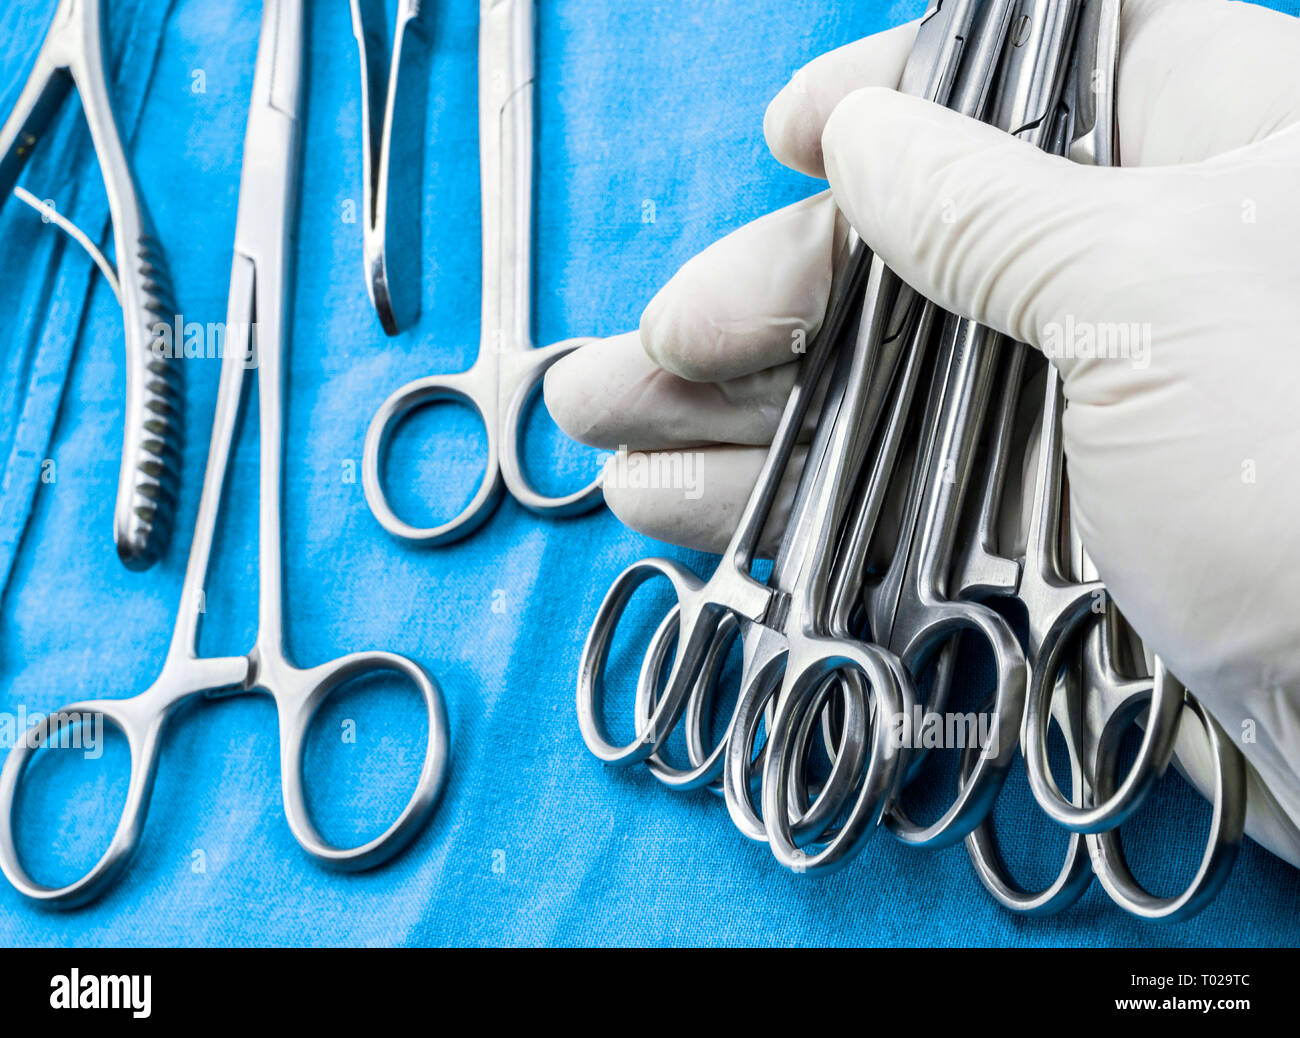 Chirurg im Operationssaal arbeiten, die Hände mit Handschuhen holding Schere Nähte, konzeptionelle Bild, composicon horizontal Stockfoto